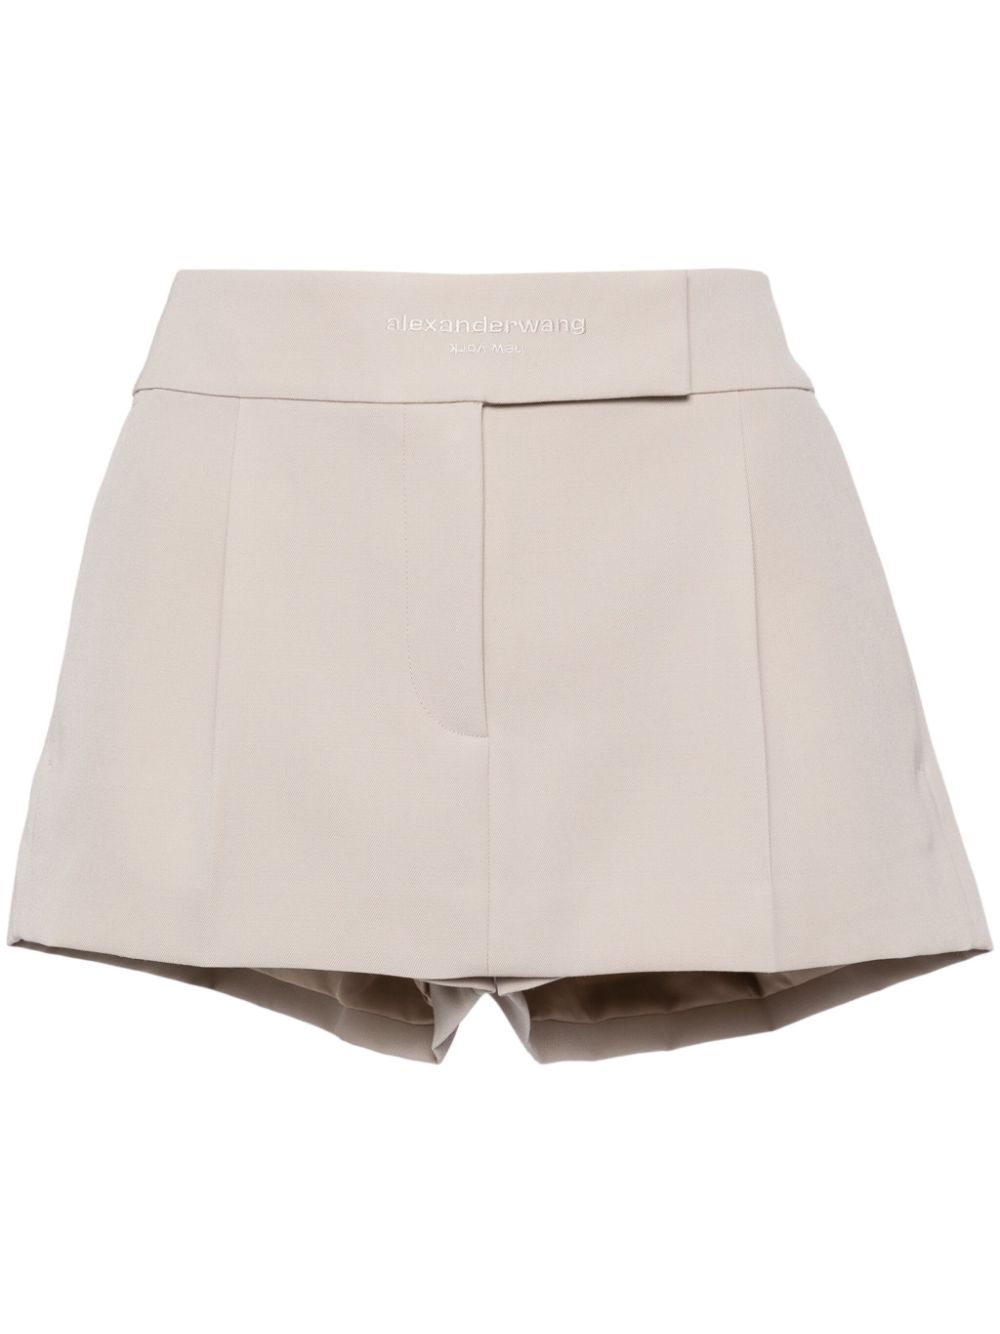 Image 1 of Alexander Wang mid-rise skirt-shorts